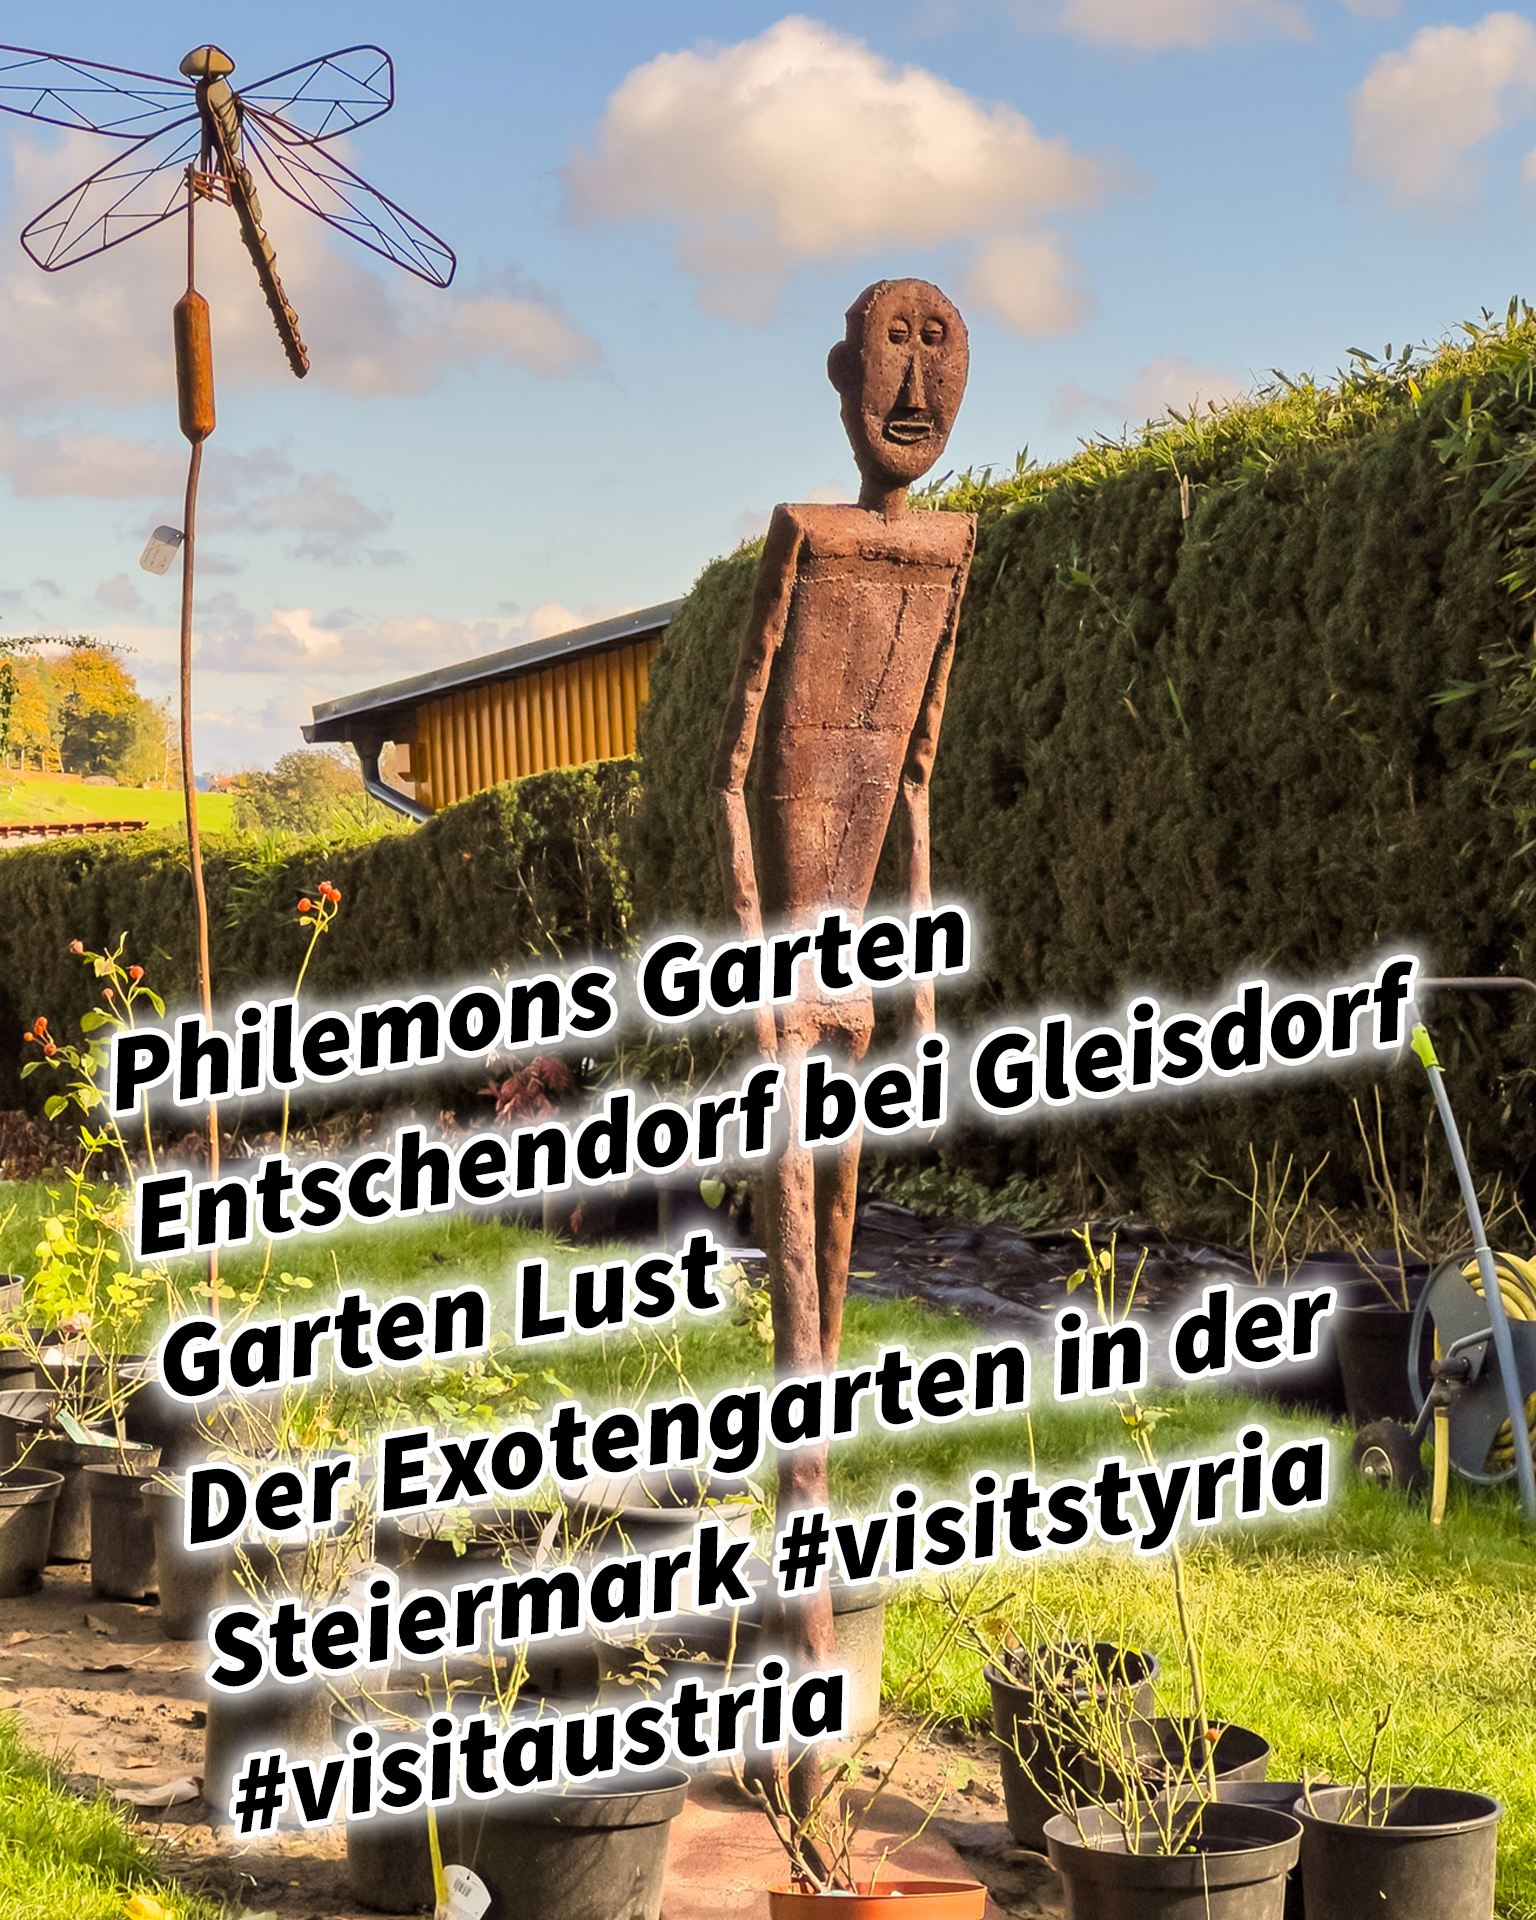 Philemons Garten Entschendorf bei Gleisdorf Garten Lust Der Exotengarten in der Steiermark #visitstyria #visitaustria